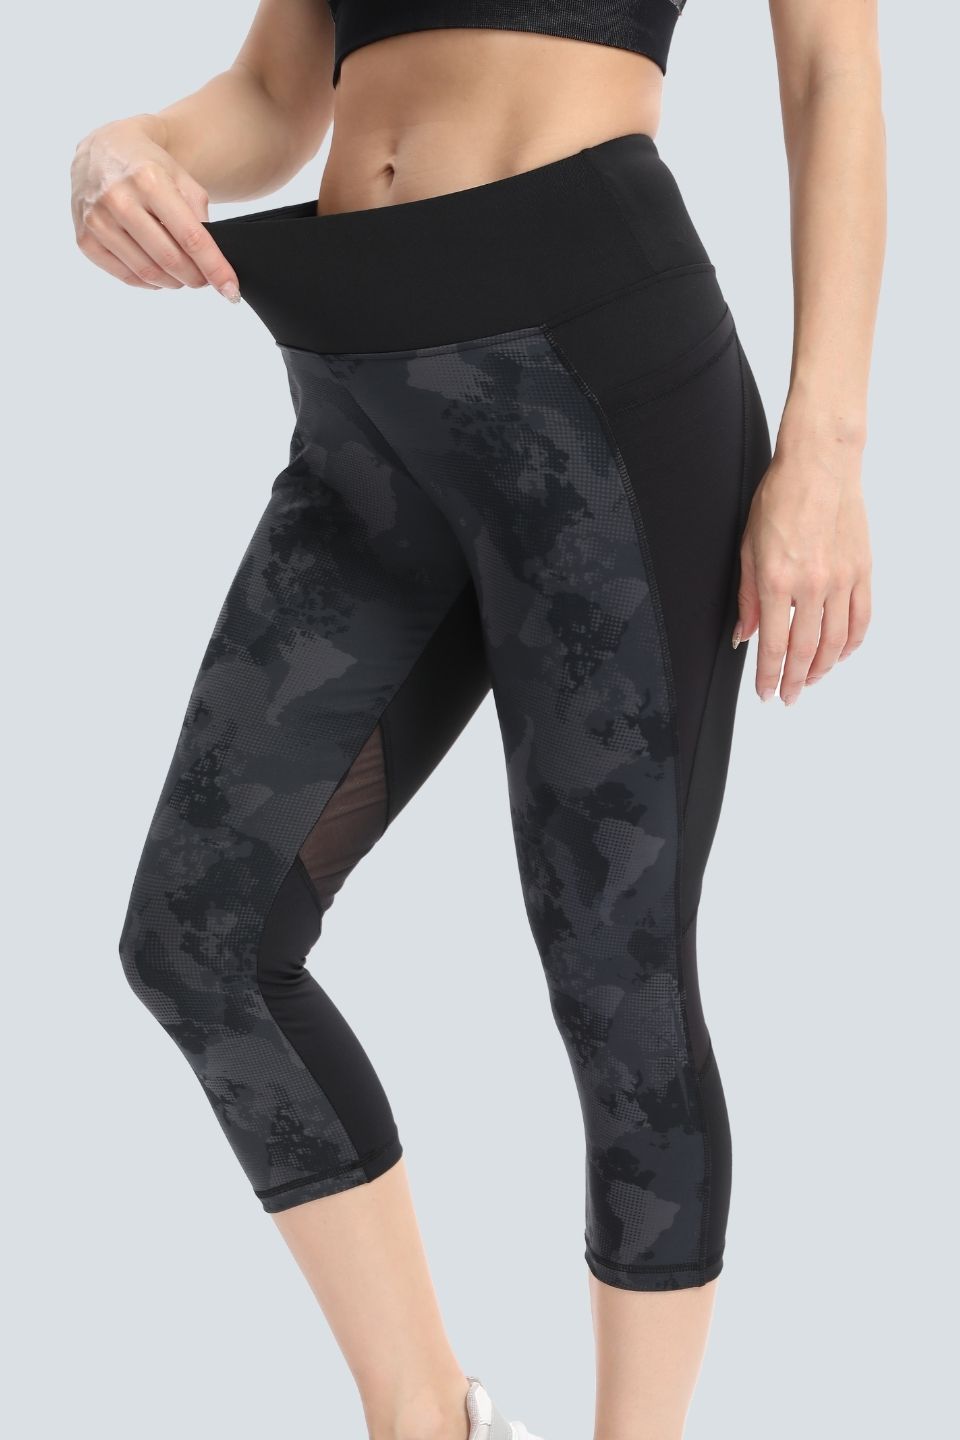 Buy Lapasa Fit Yoga Crop Pants Capris Hidden Pocket Leggings for